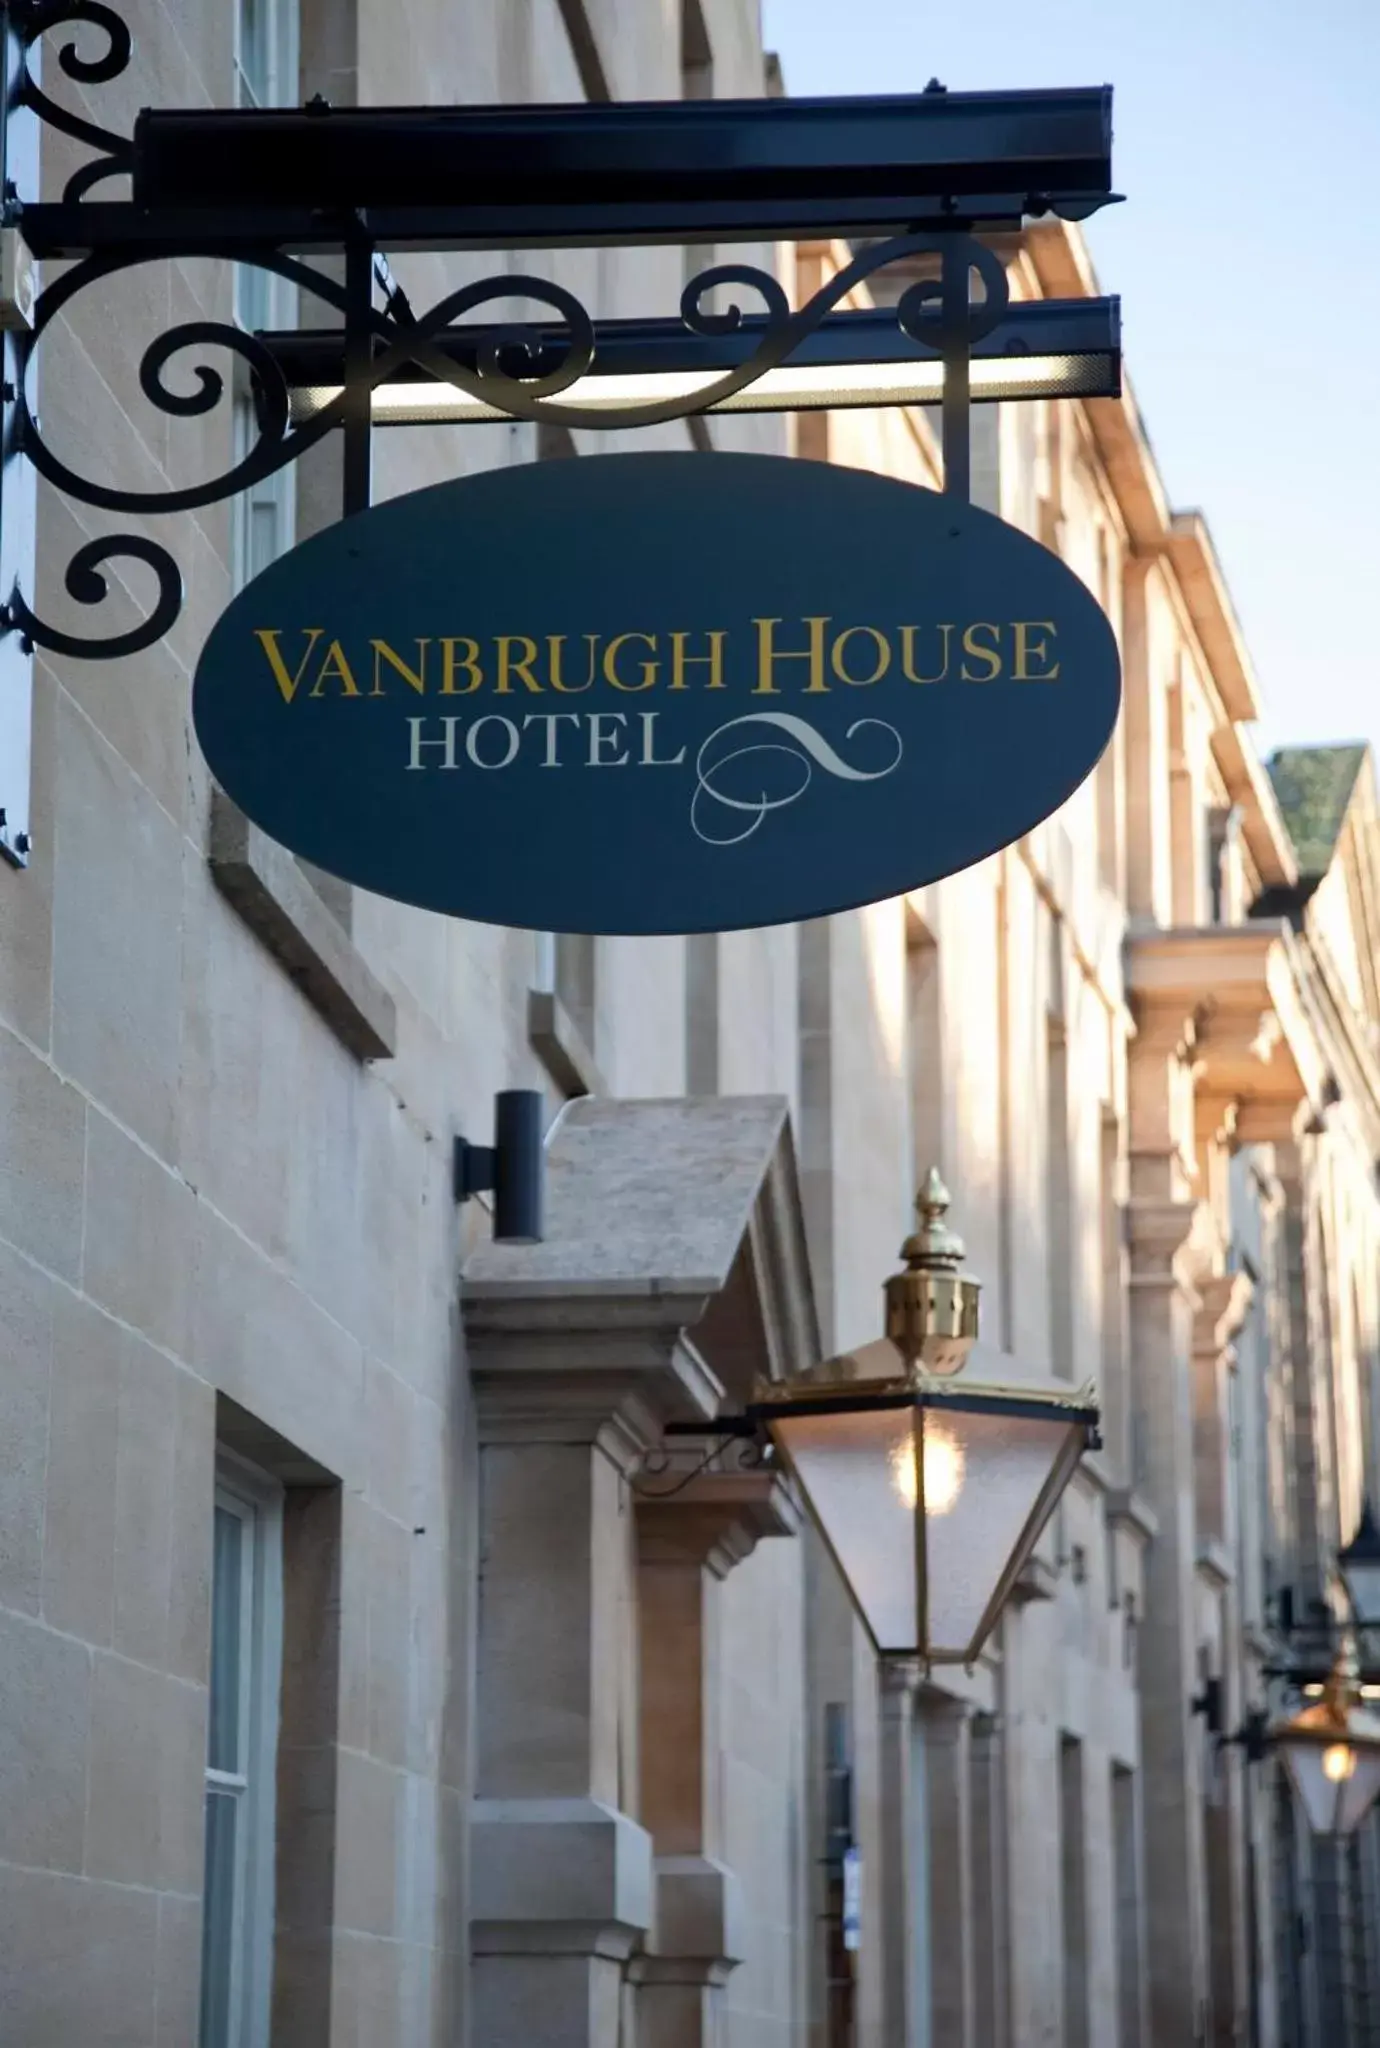 Property logo or sign in Vanbrugh House Hotel